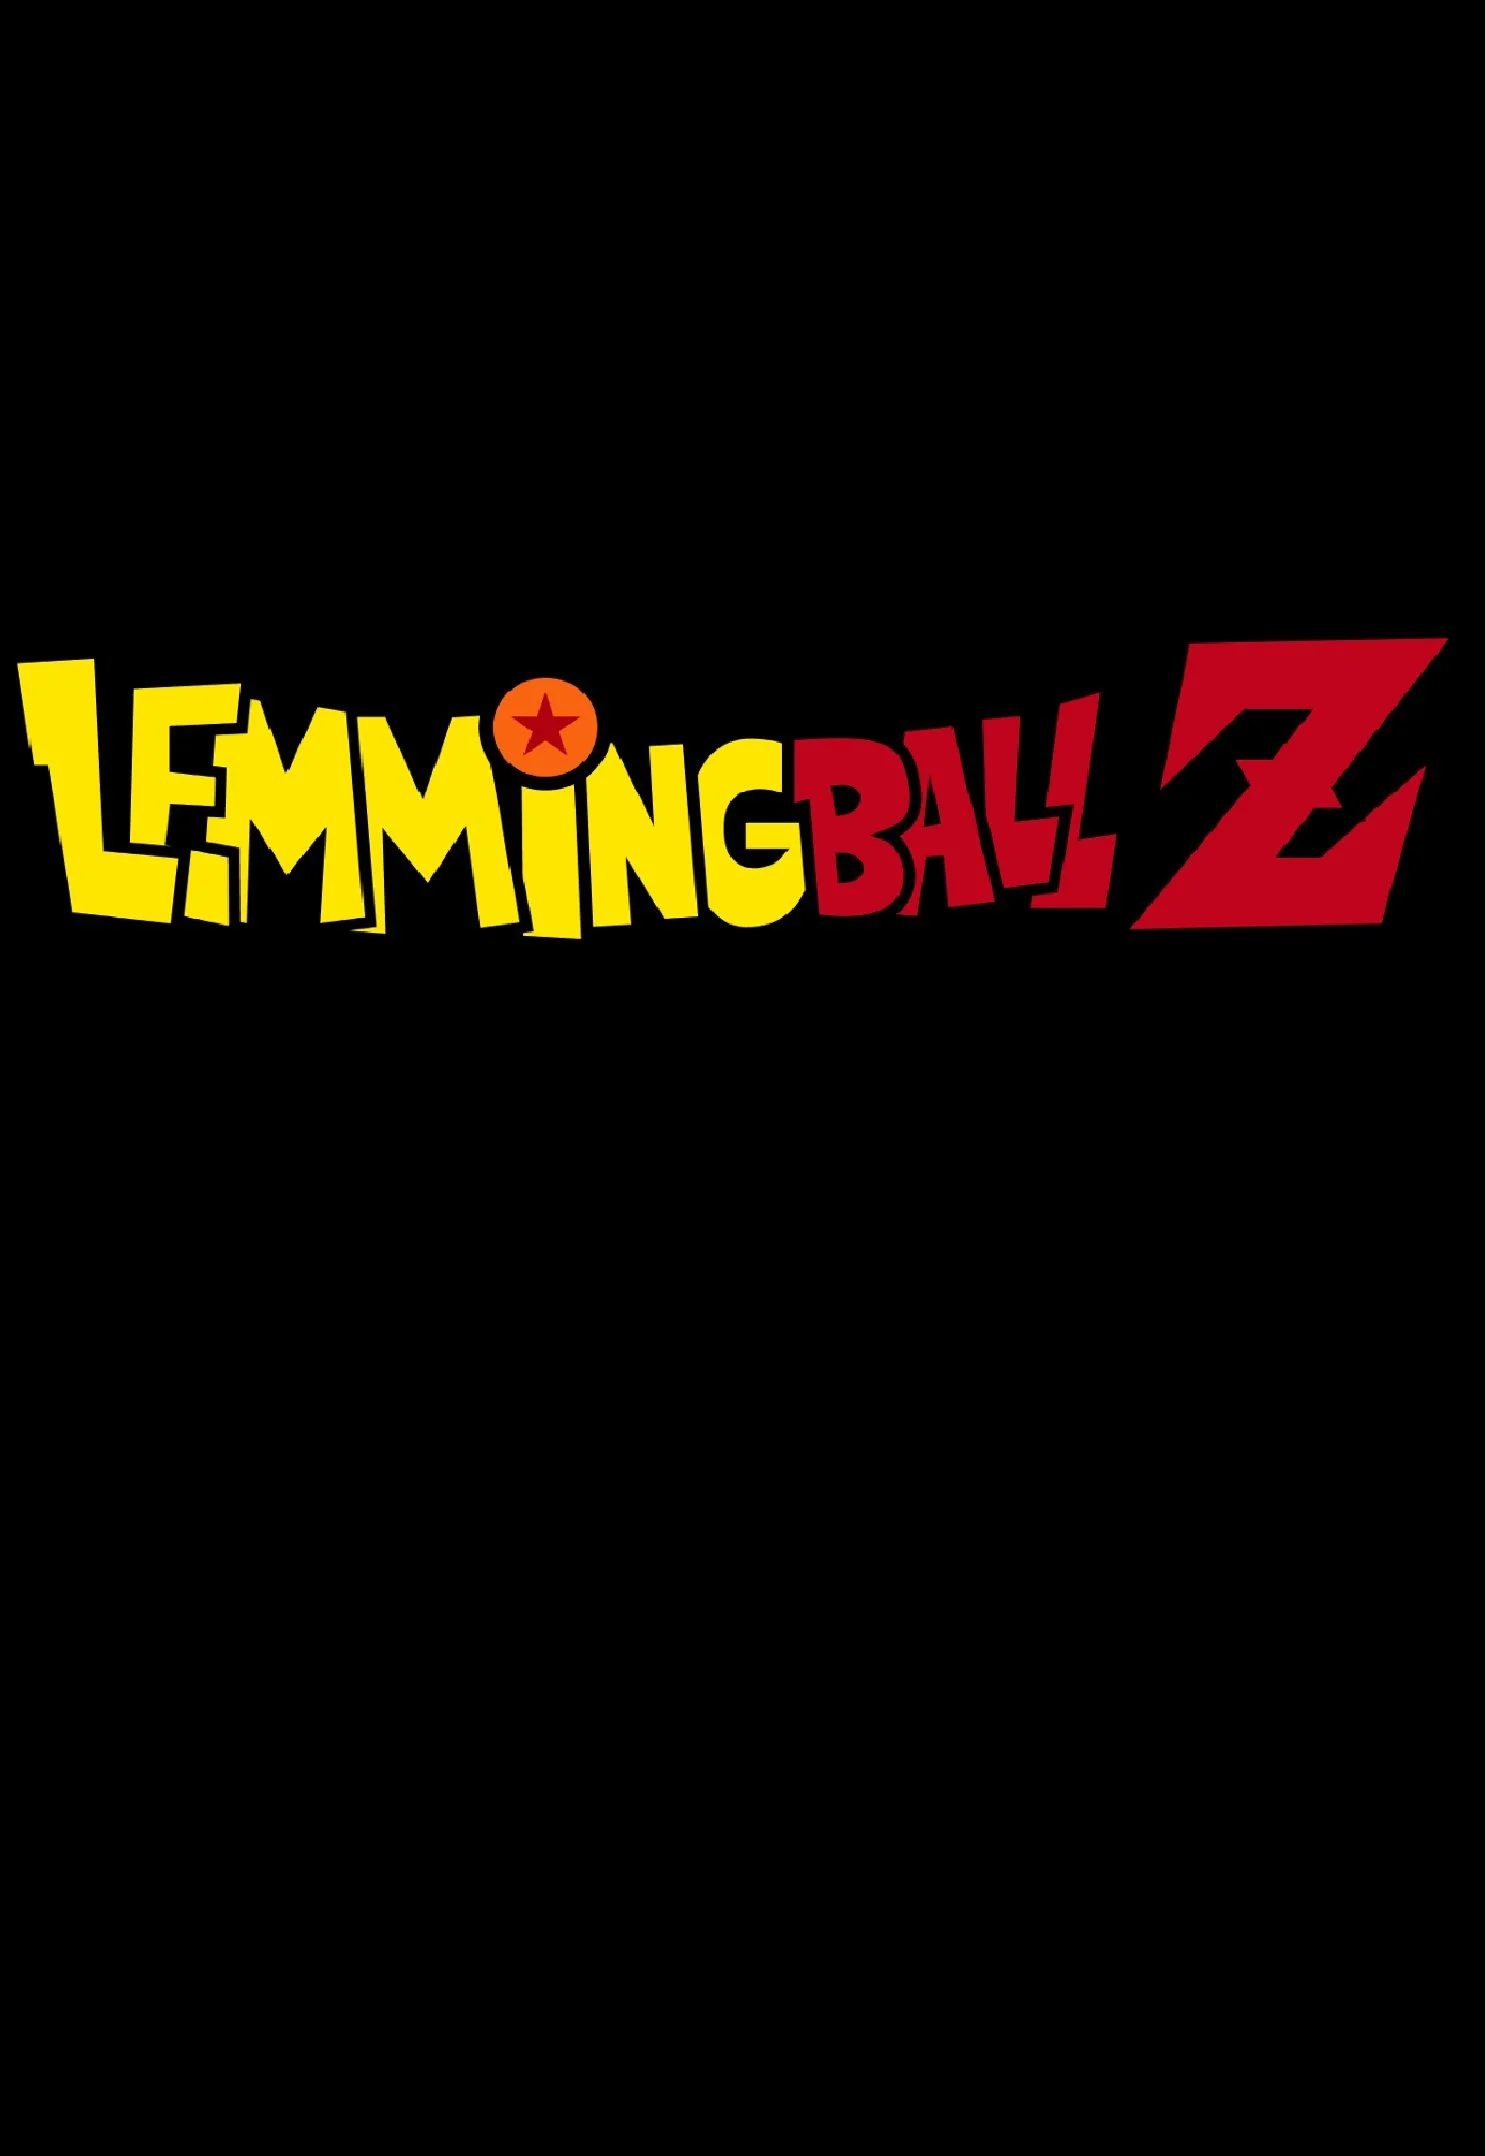 Lemmingball Z